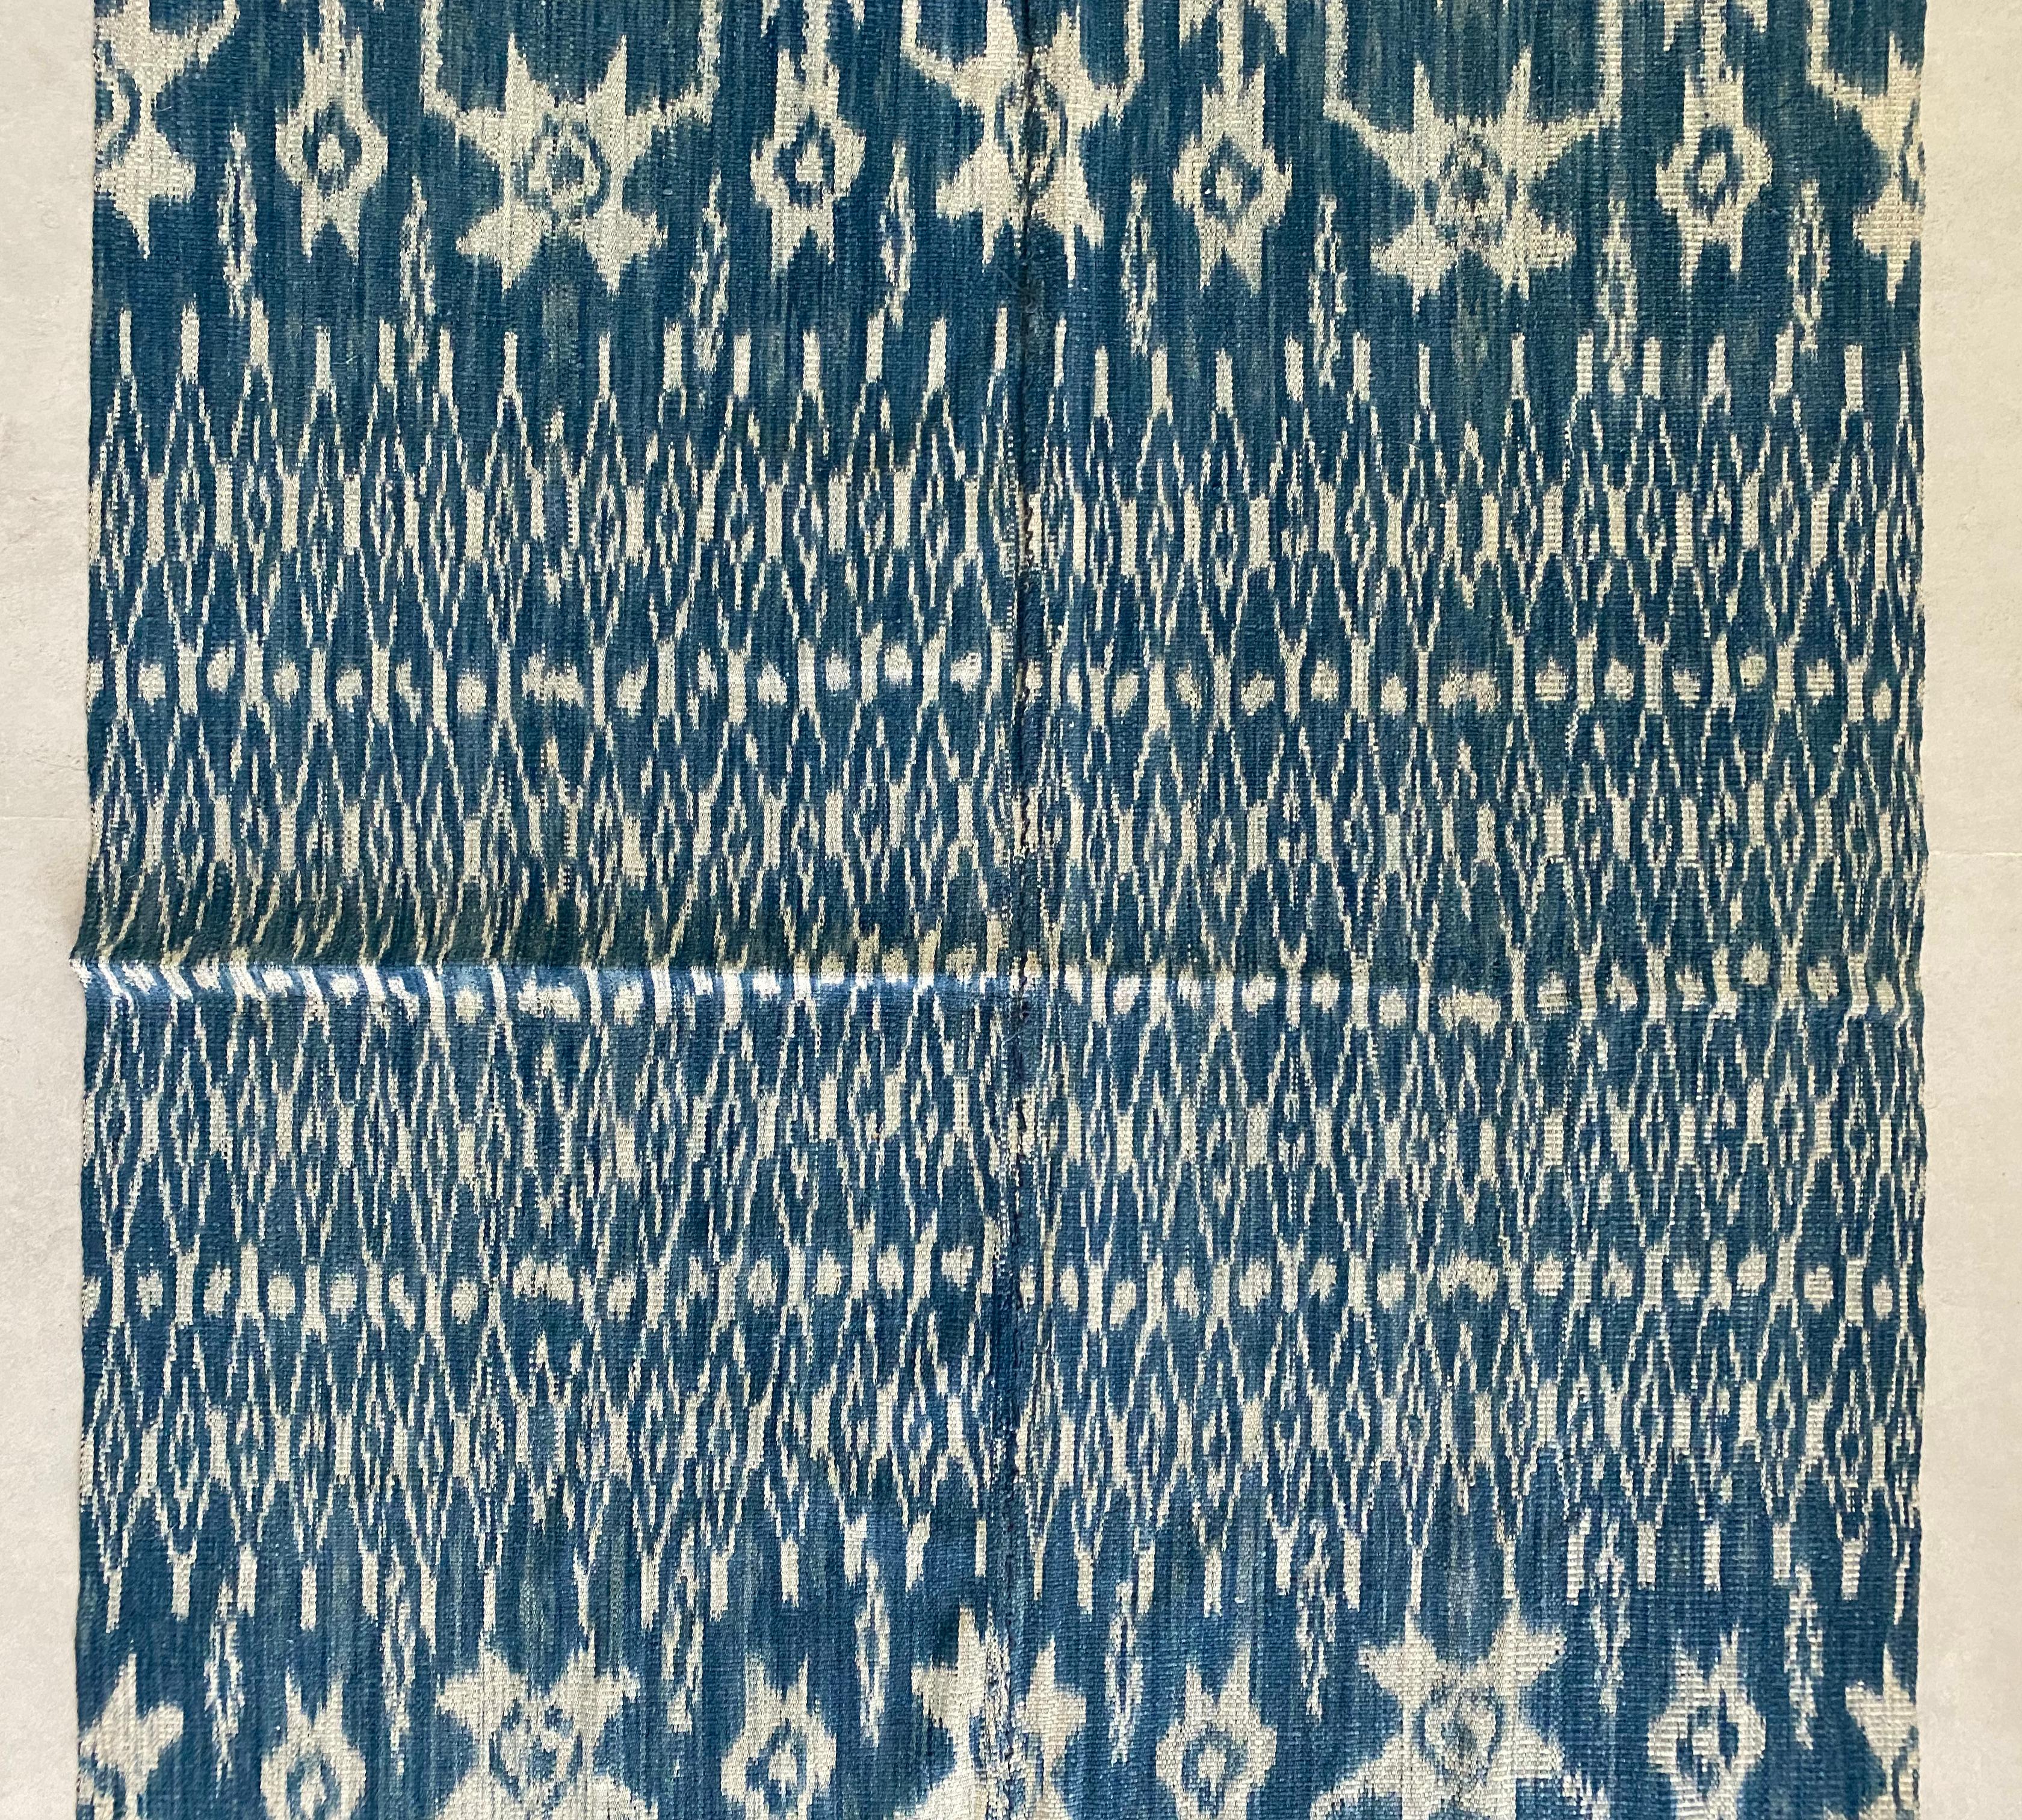 Dieses Ikat-Textil stammt von der Insel Sumba in Indonesien. Es wird mit natürlich gefärbten Garnen nach einer seit Generationen überlieferten Methode handgewebt. Es zeichnet sich durch ein überwiegend blaues Pigment mit Hühnermotiven und deutlichen